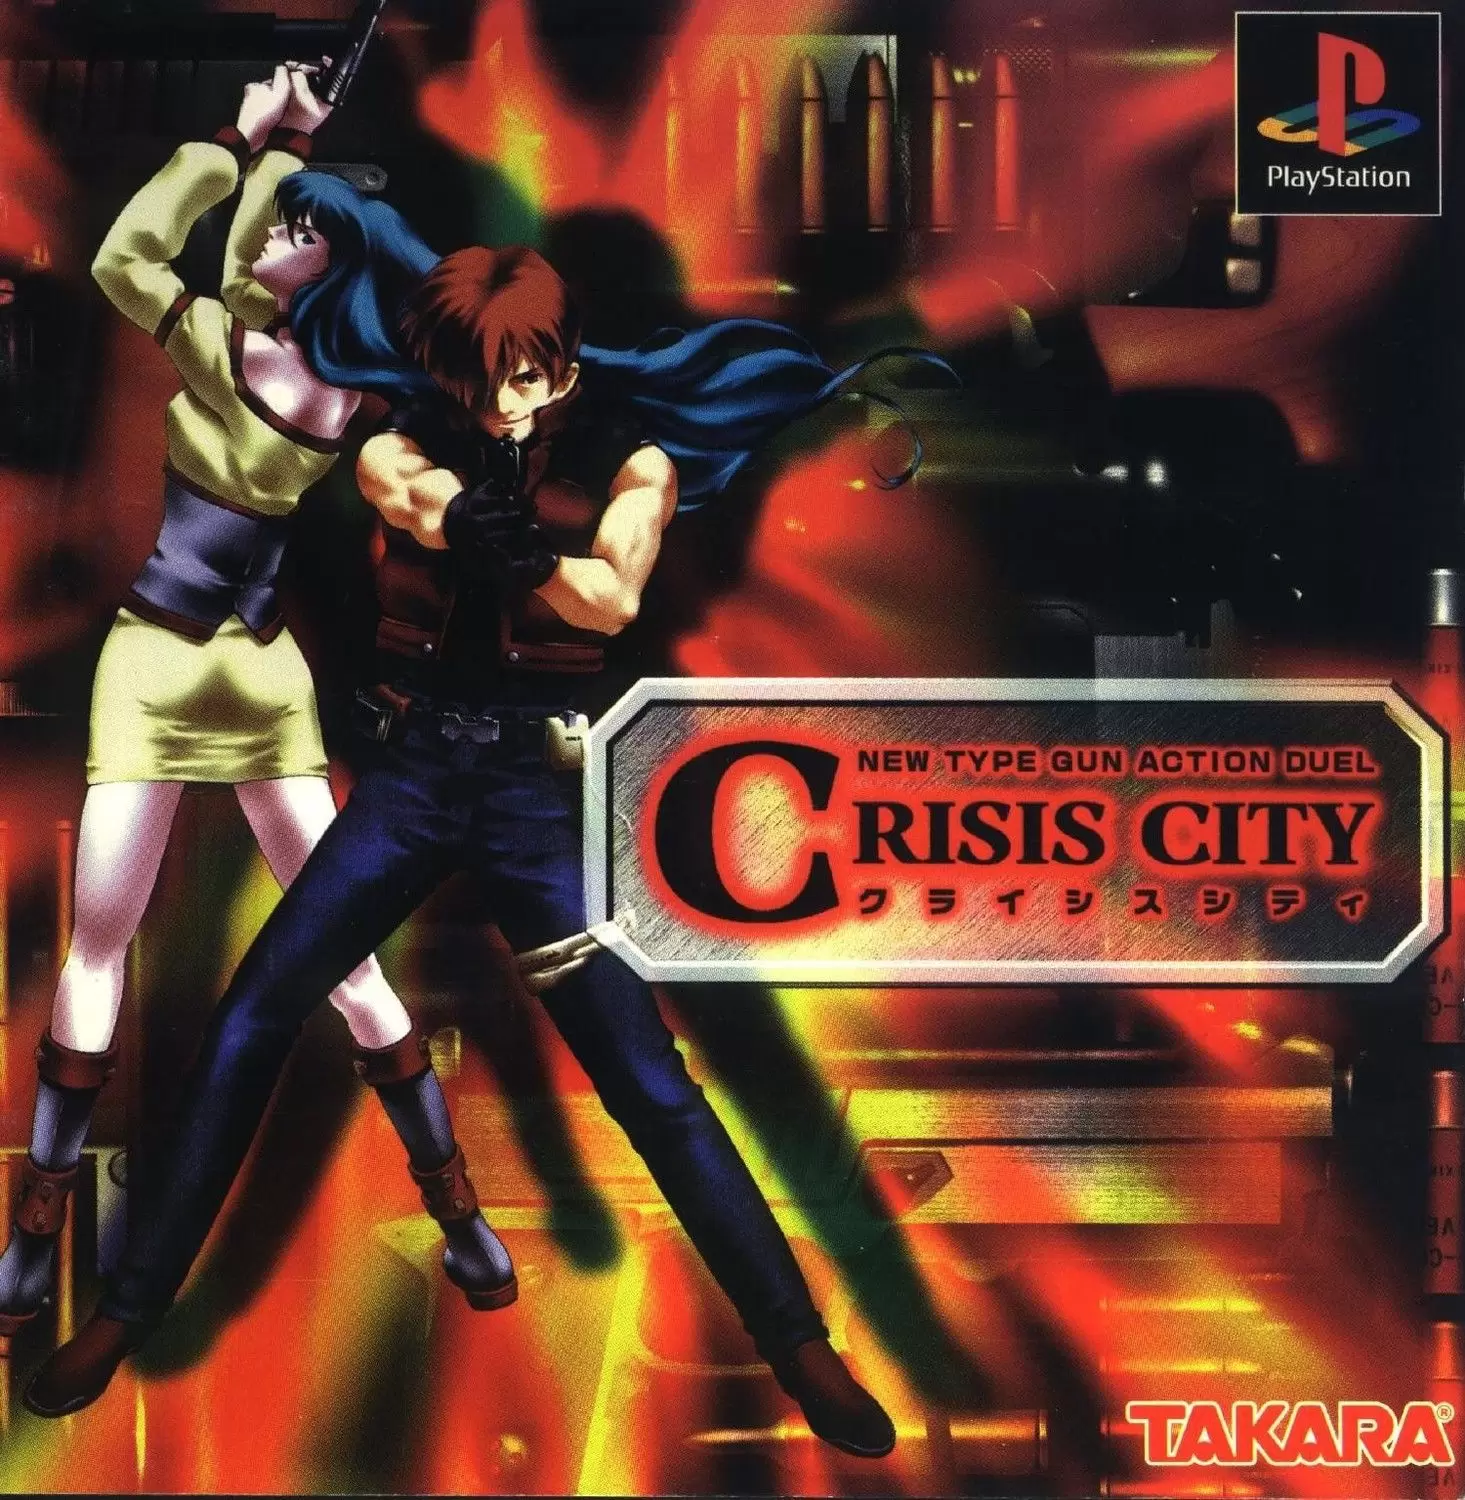 Playstation games - Crisis City